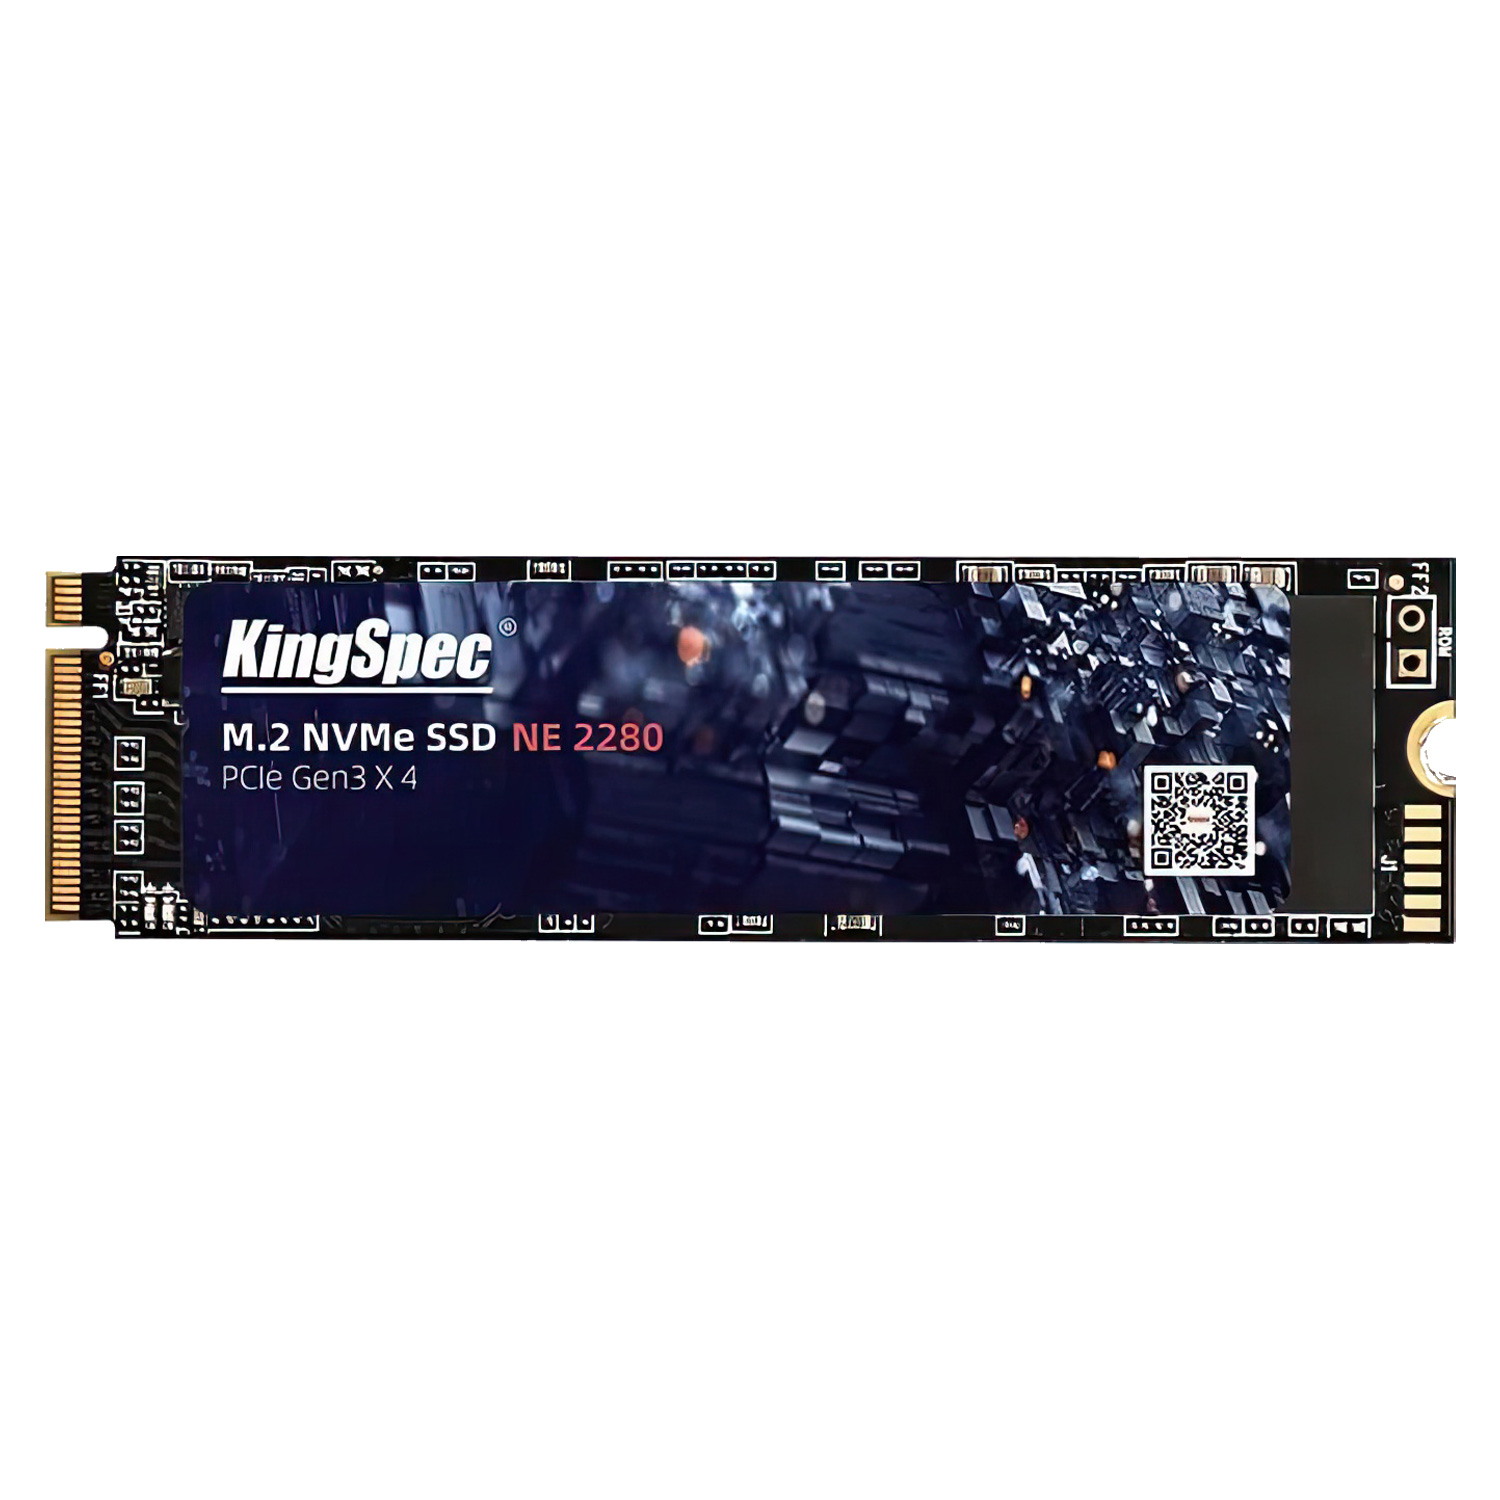 SSD M.2 Kingspec NE-256 256GB / GEN3 / NVME